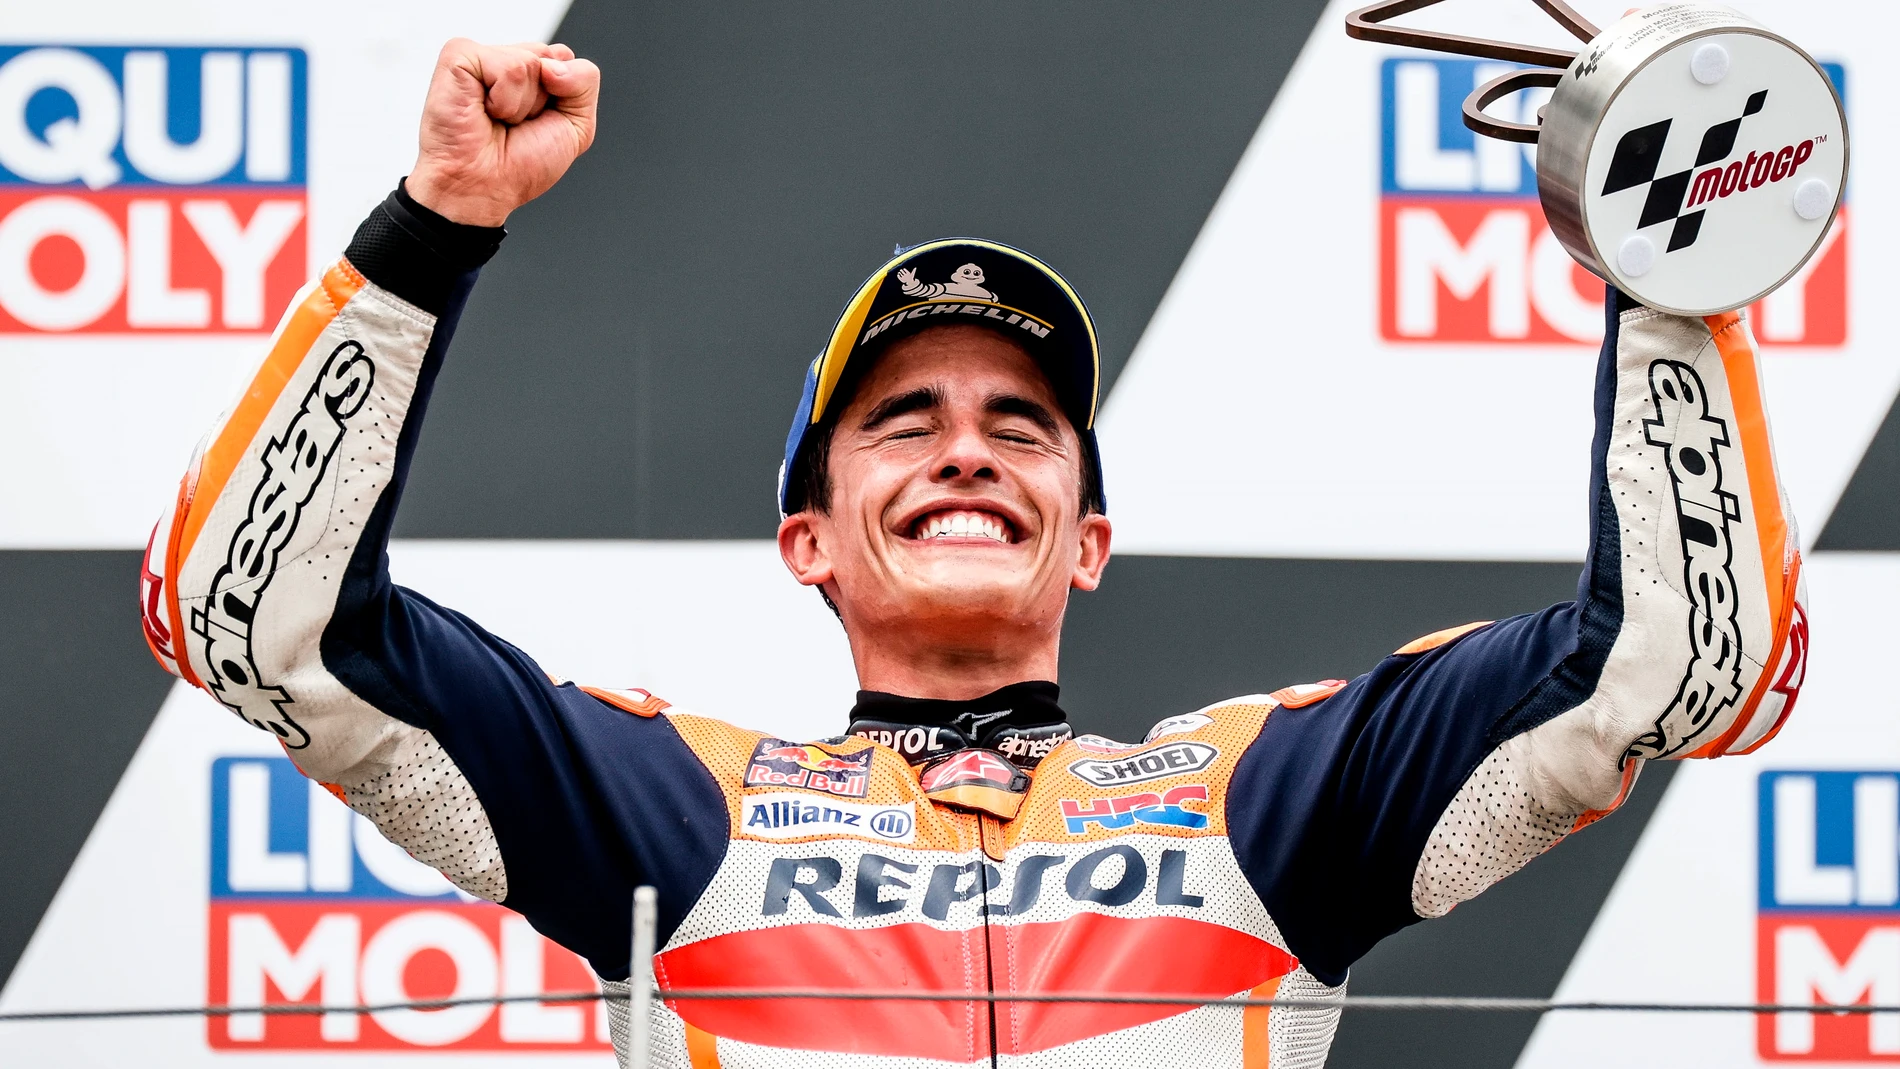 Marc Márquez gana el GP de Alemania y consigue su primera victoria en Moto GP 19 meses después